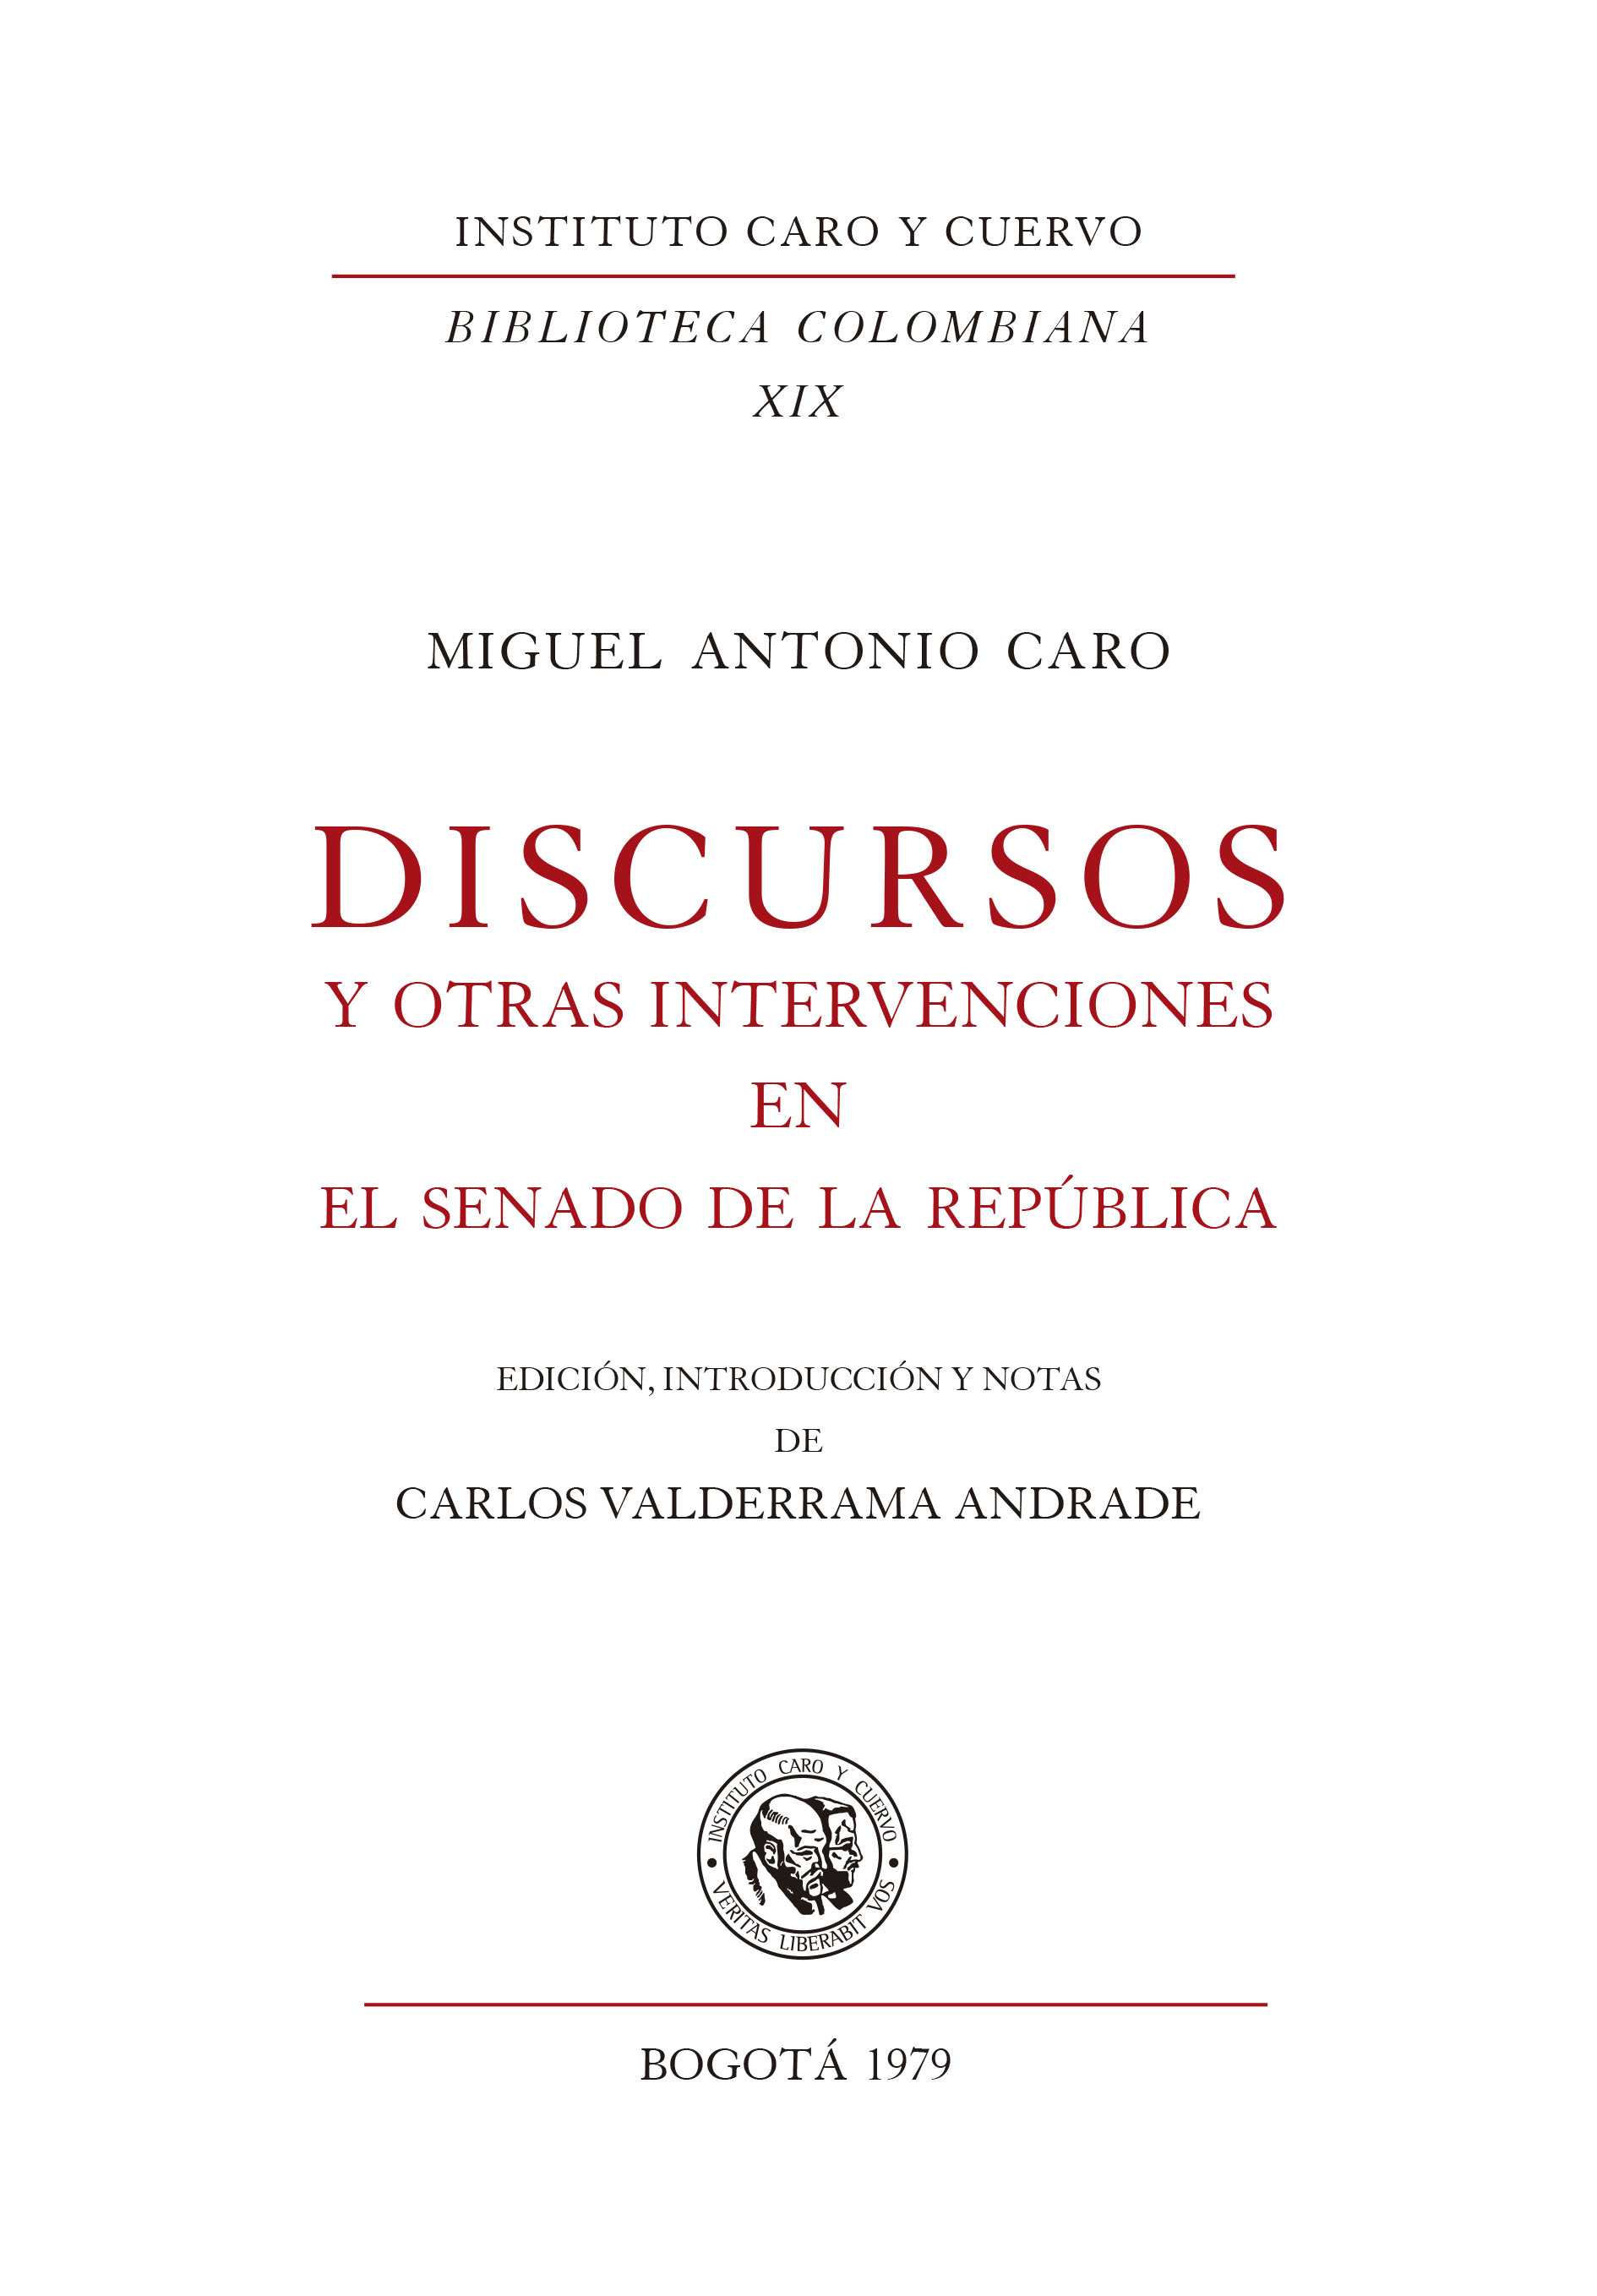 Discursos y otras intervenciones en el Senado de la República 1903-1904